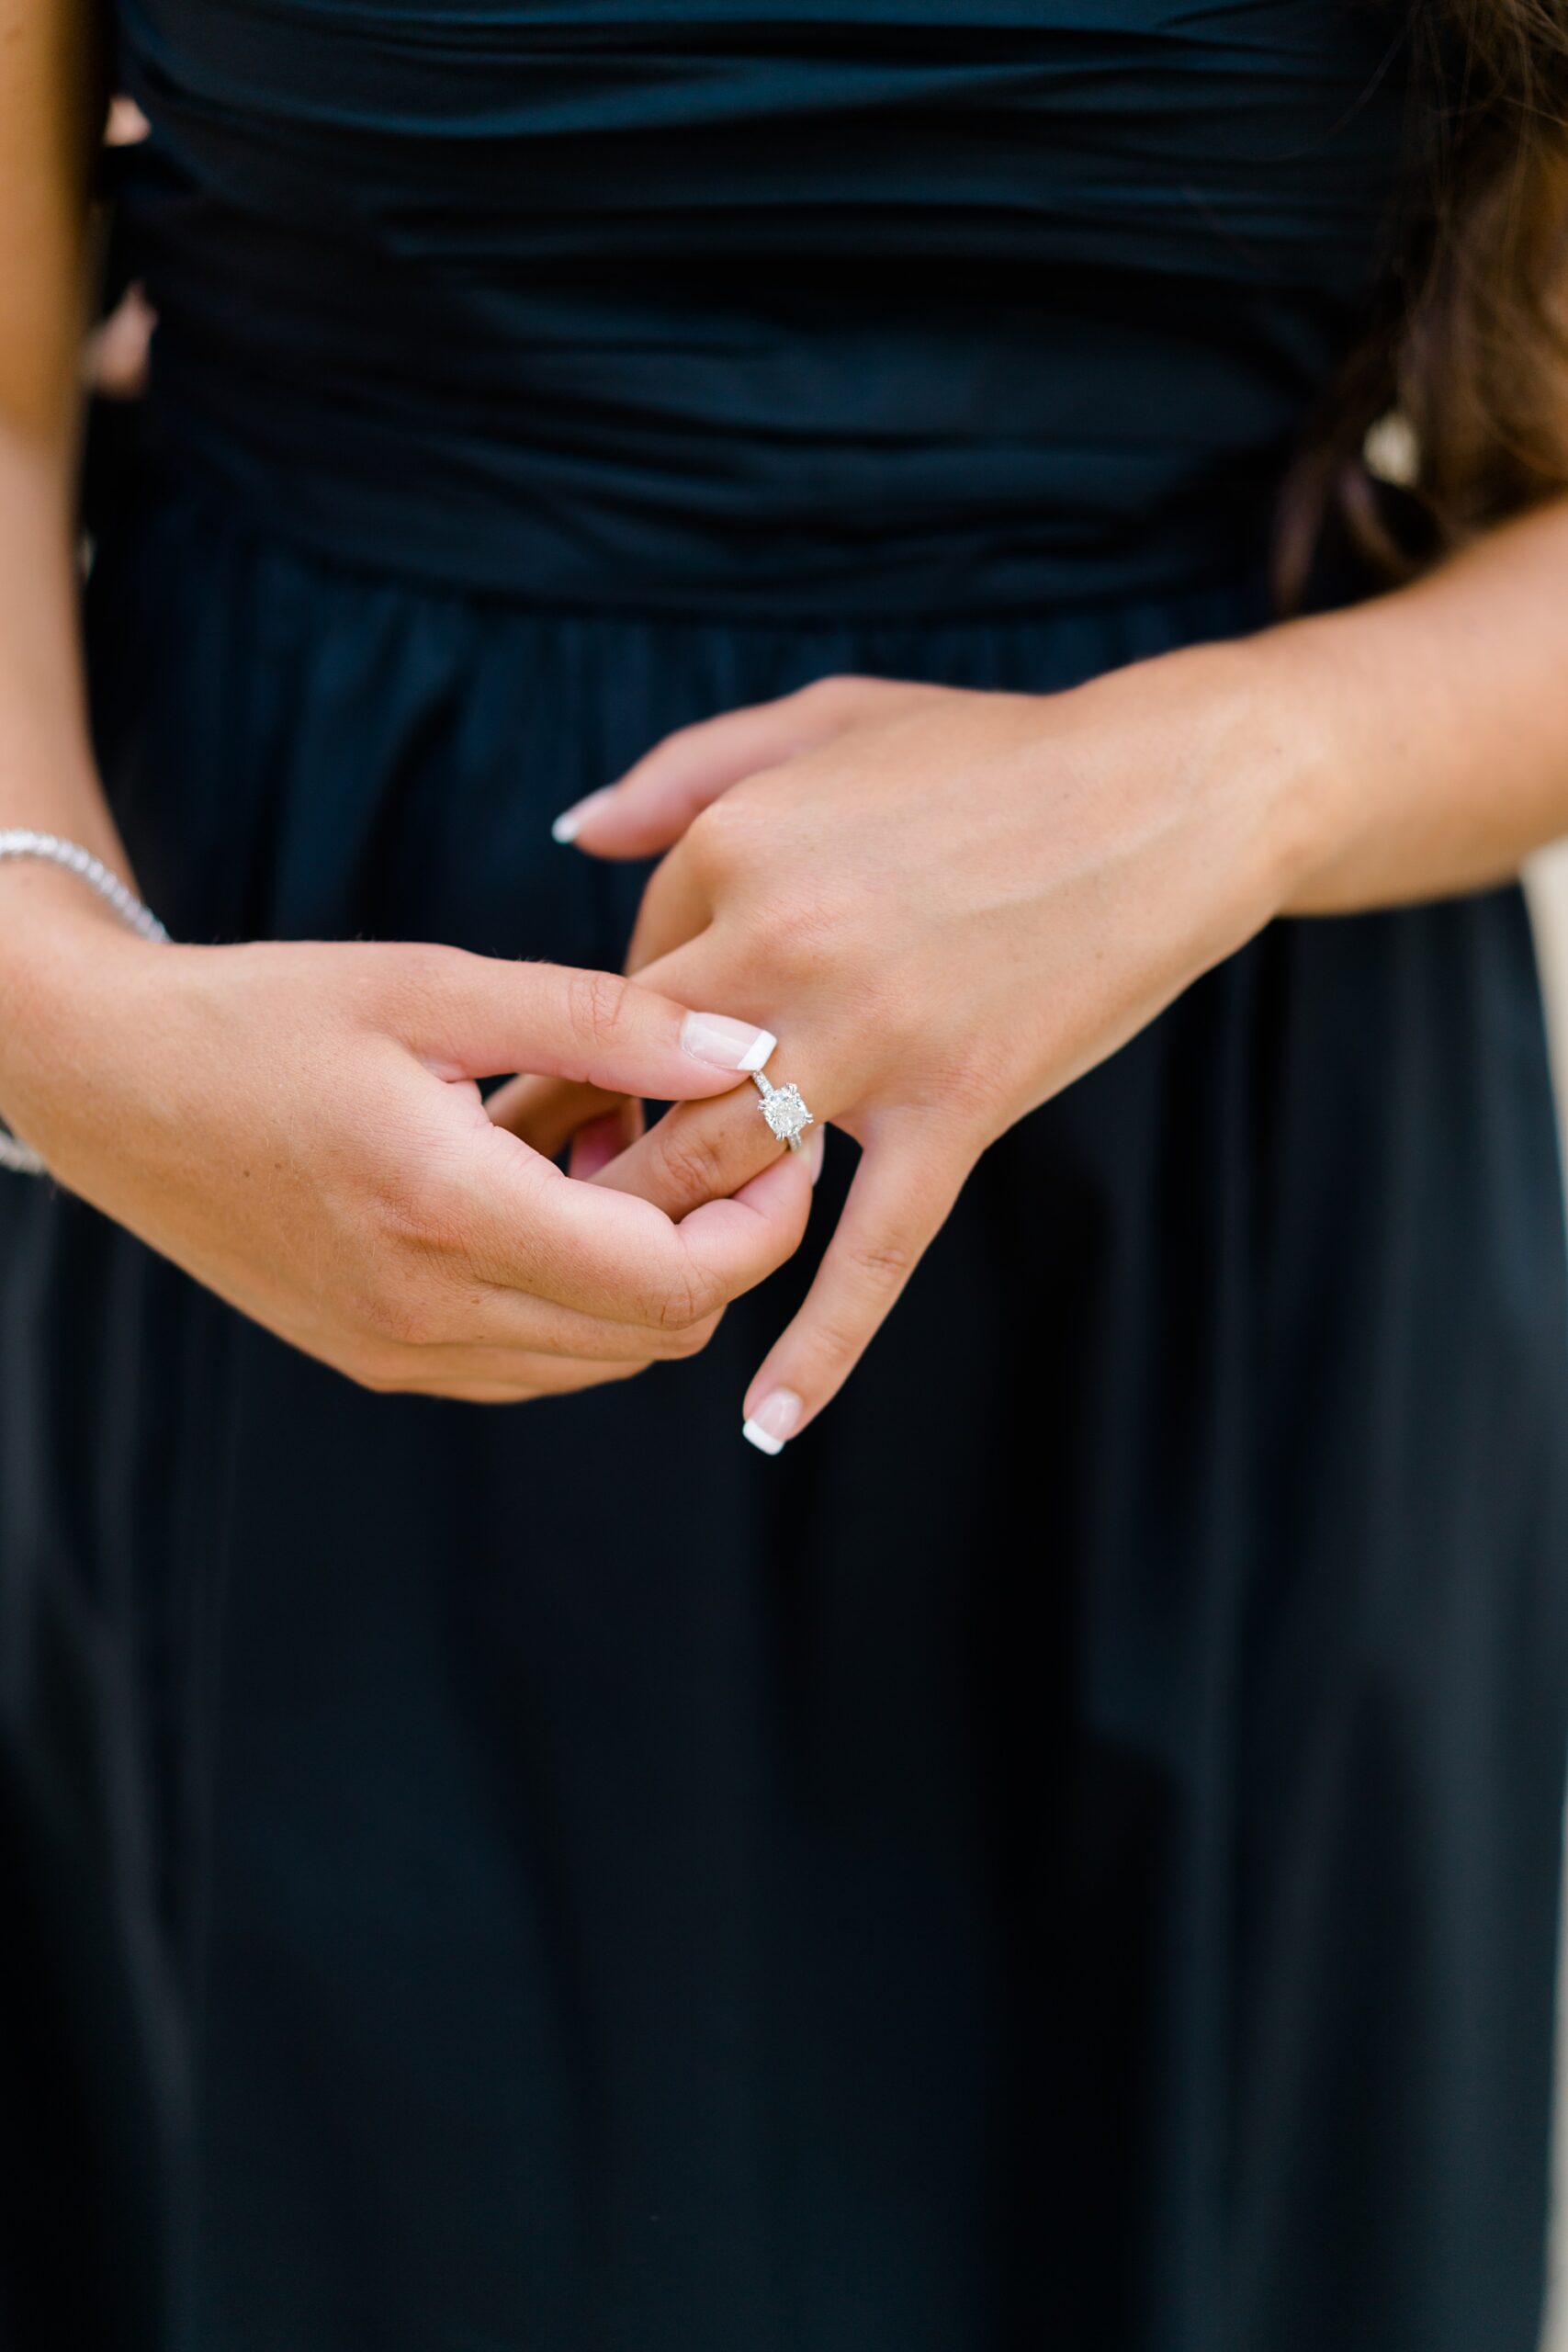 women wearing engagement ring